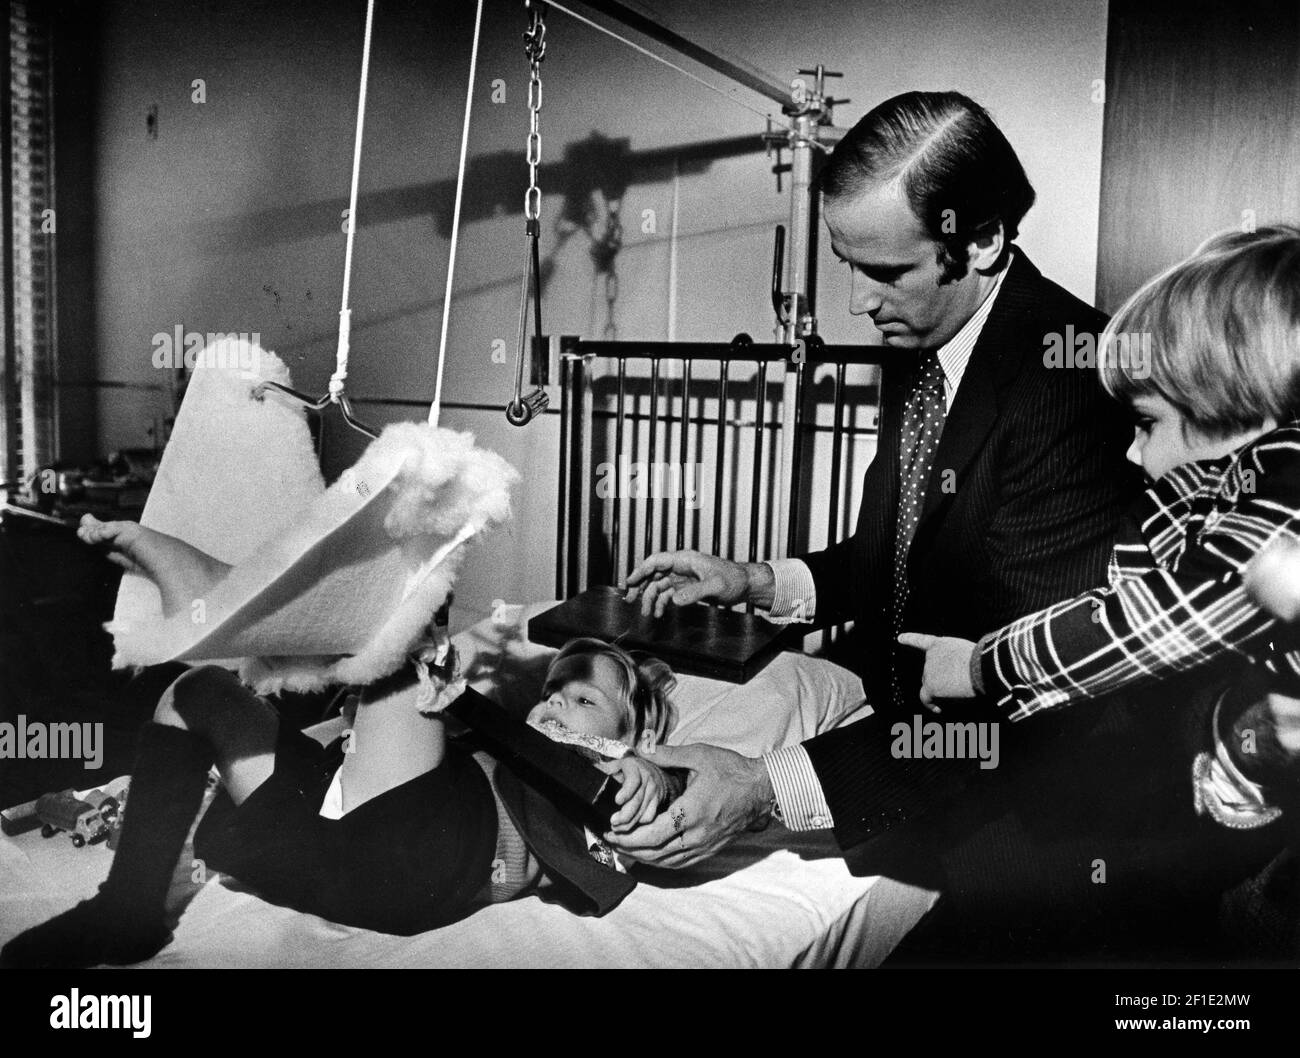 5 de enero de 1973; Wilmington, DE, EE.UU.; Los niños Biden presentan al Senador electo Joe Biden un regalo en la sala del hospital antes de su ceremonia y lo ayudan a abrirlo. Crédito obligatorio: Jodi Cobb/The News Journal-USA TODAY NETWORK/Sipa USA Foto de stock